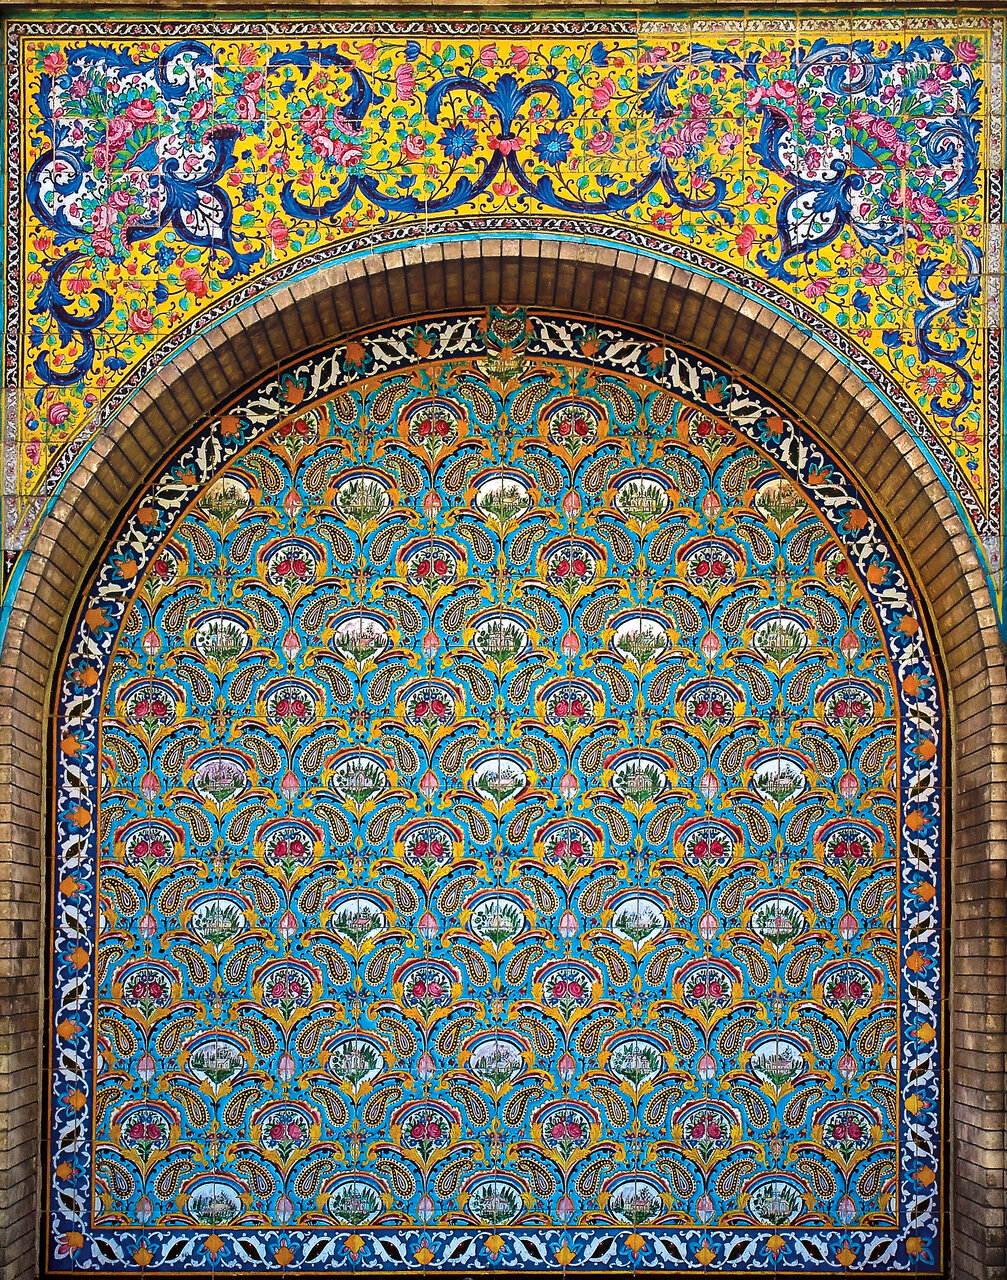 انعکاس تصویر بهشت روی دیوارهای باغی در تهران